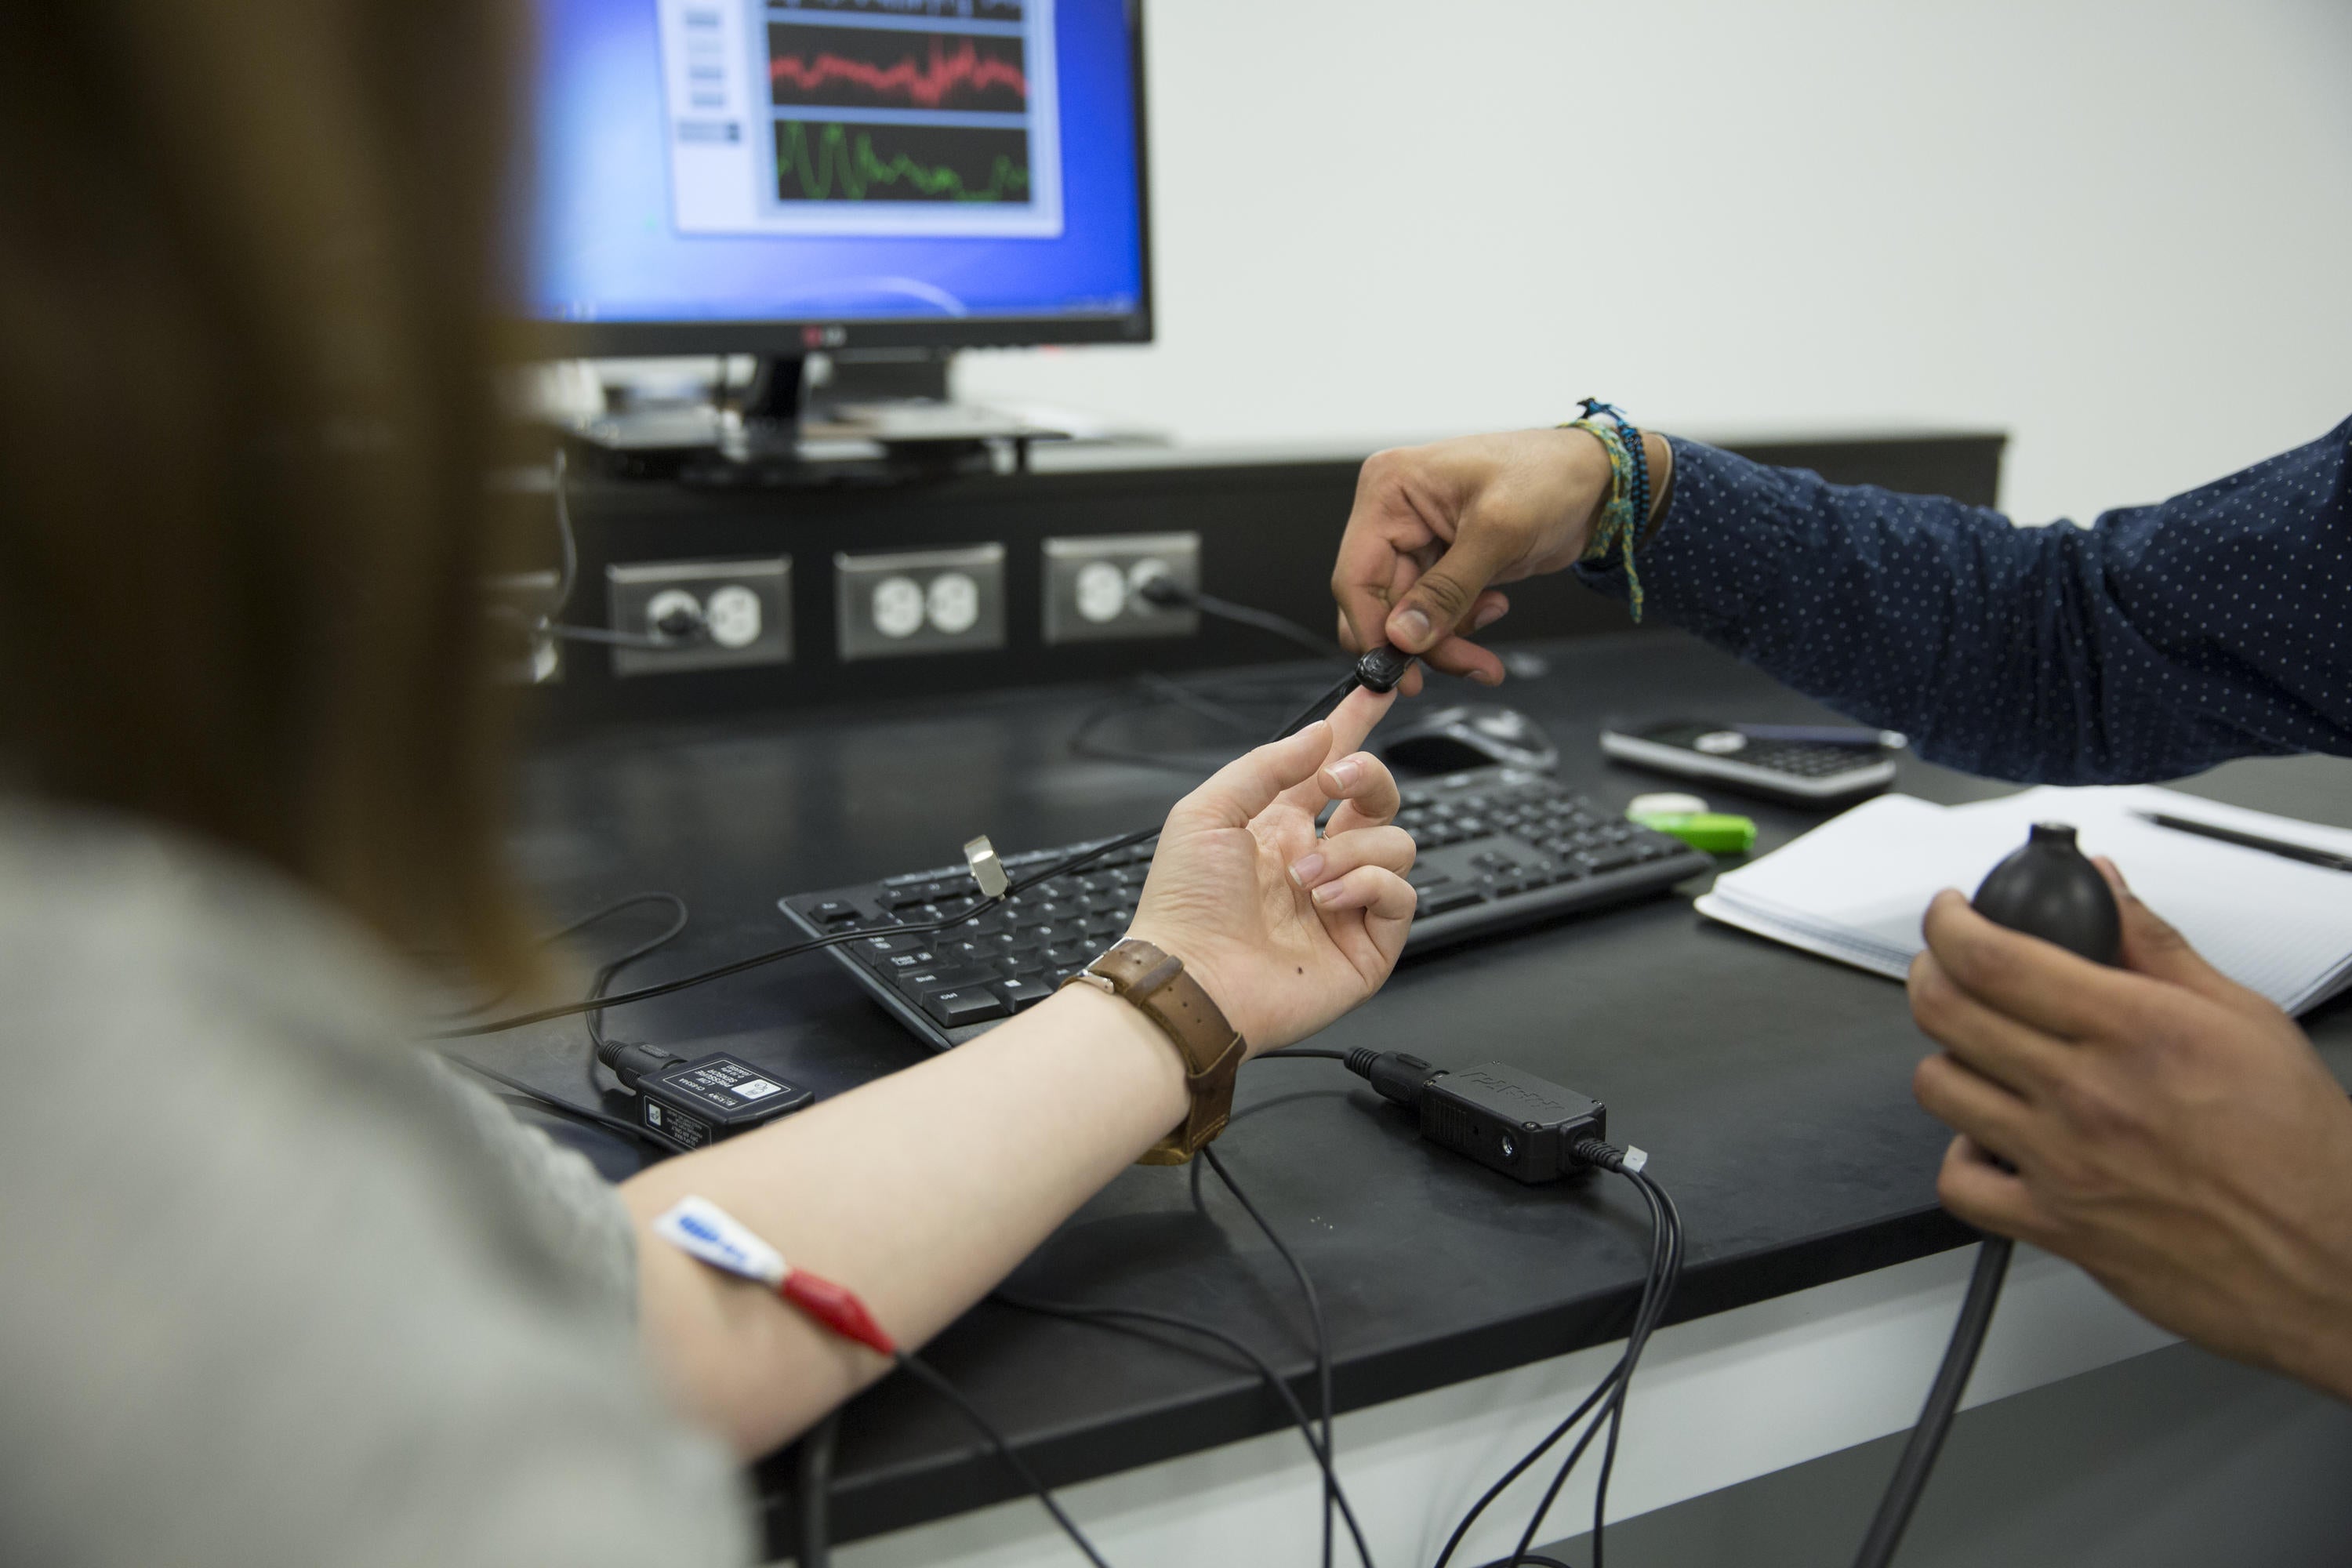 Student using finger sensor in lab